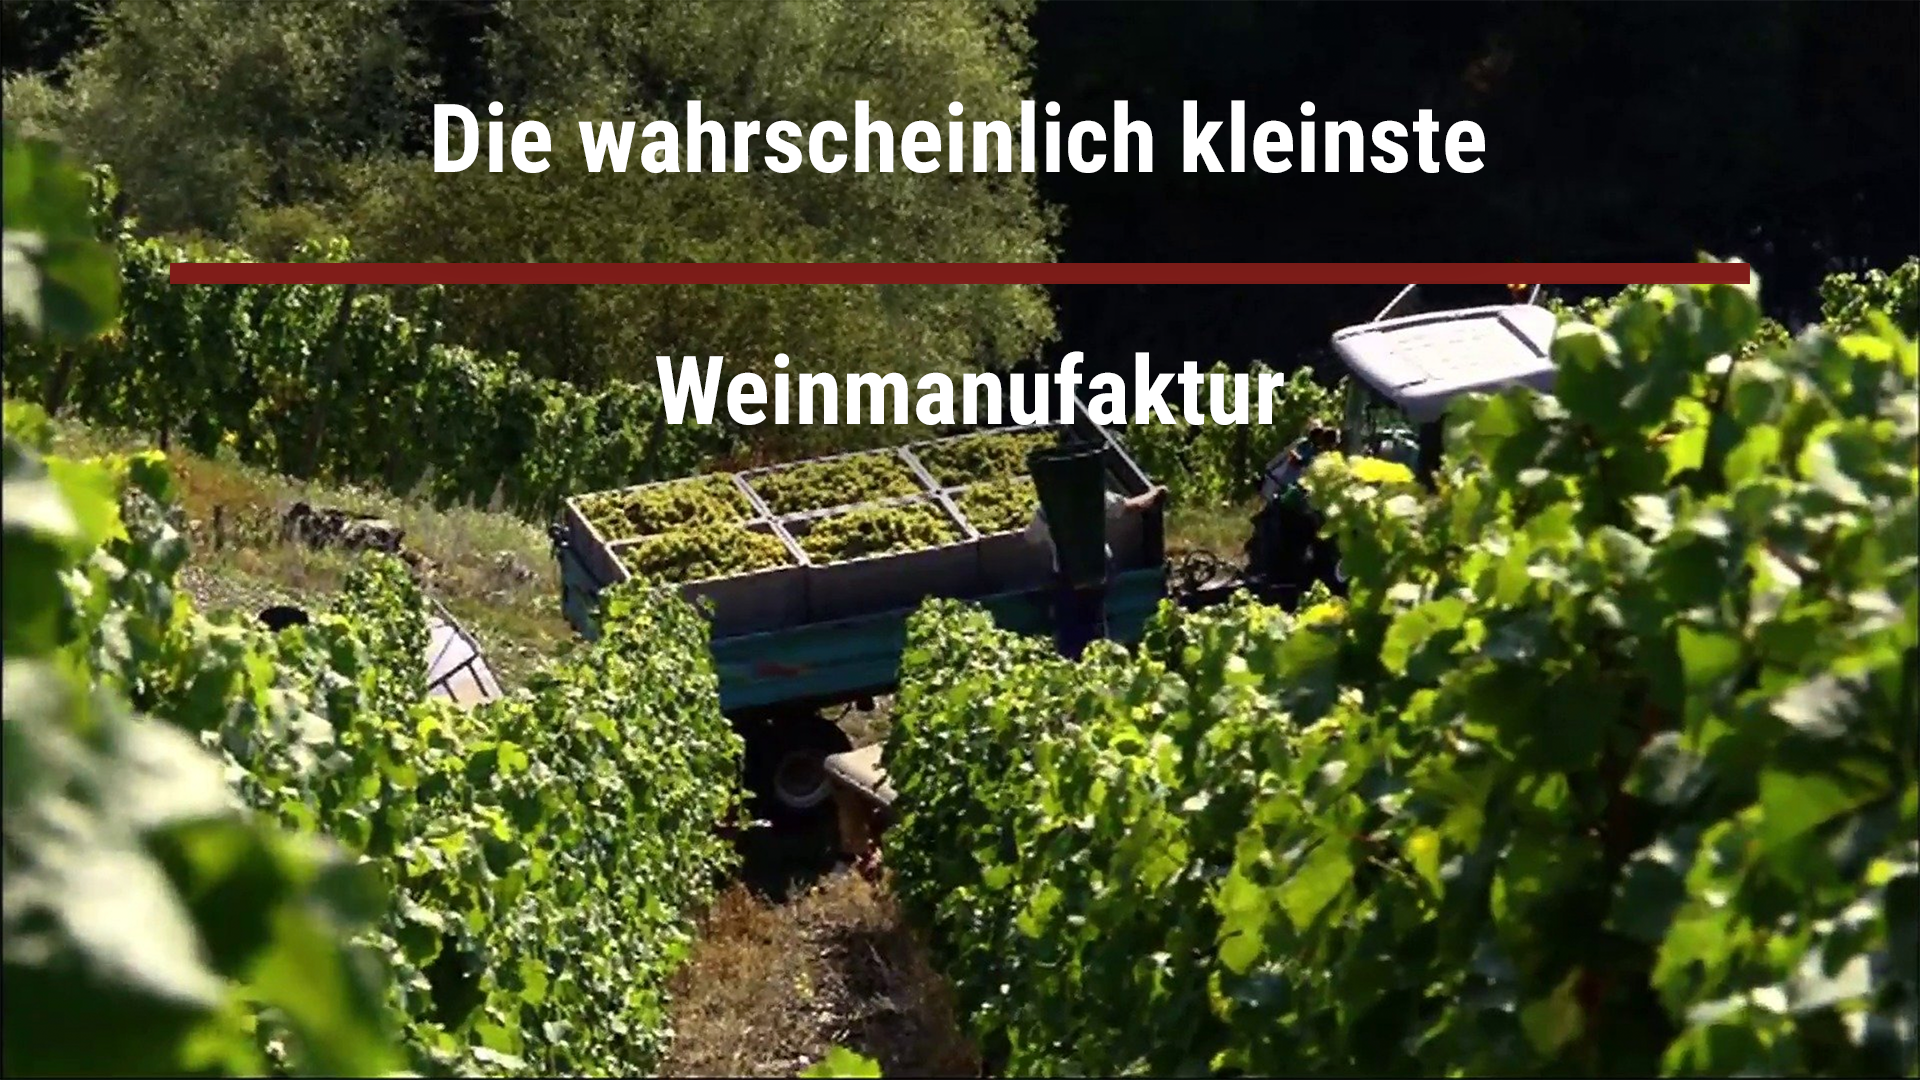 Read more about the article Die wahrscheinlich kleinste Weinmanufaktur